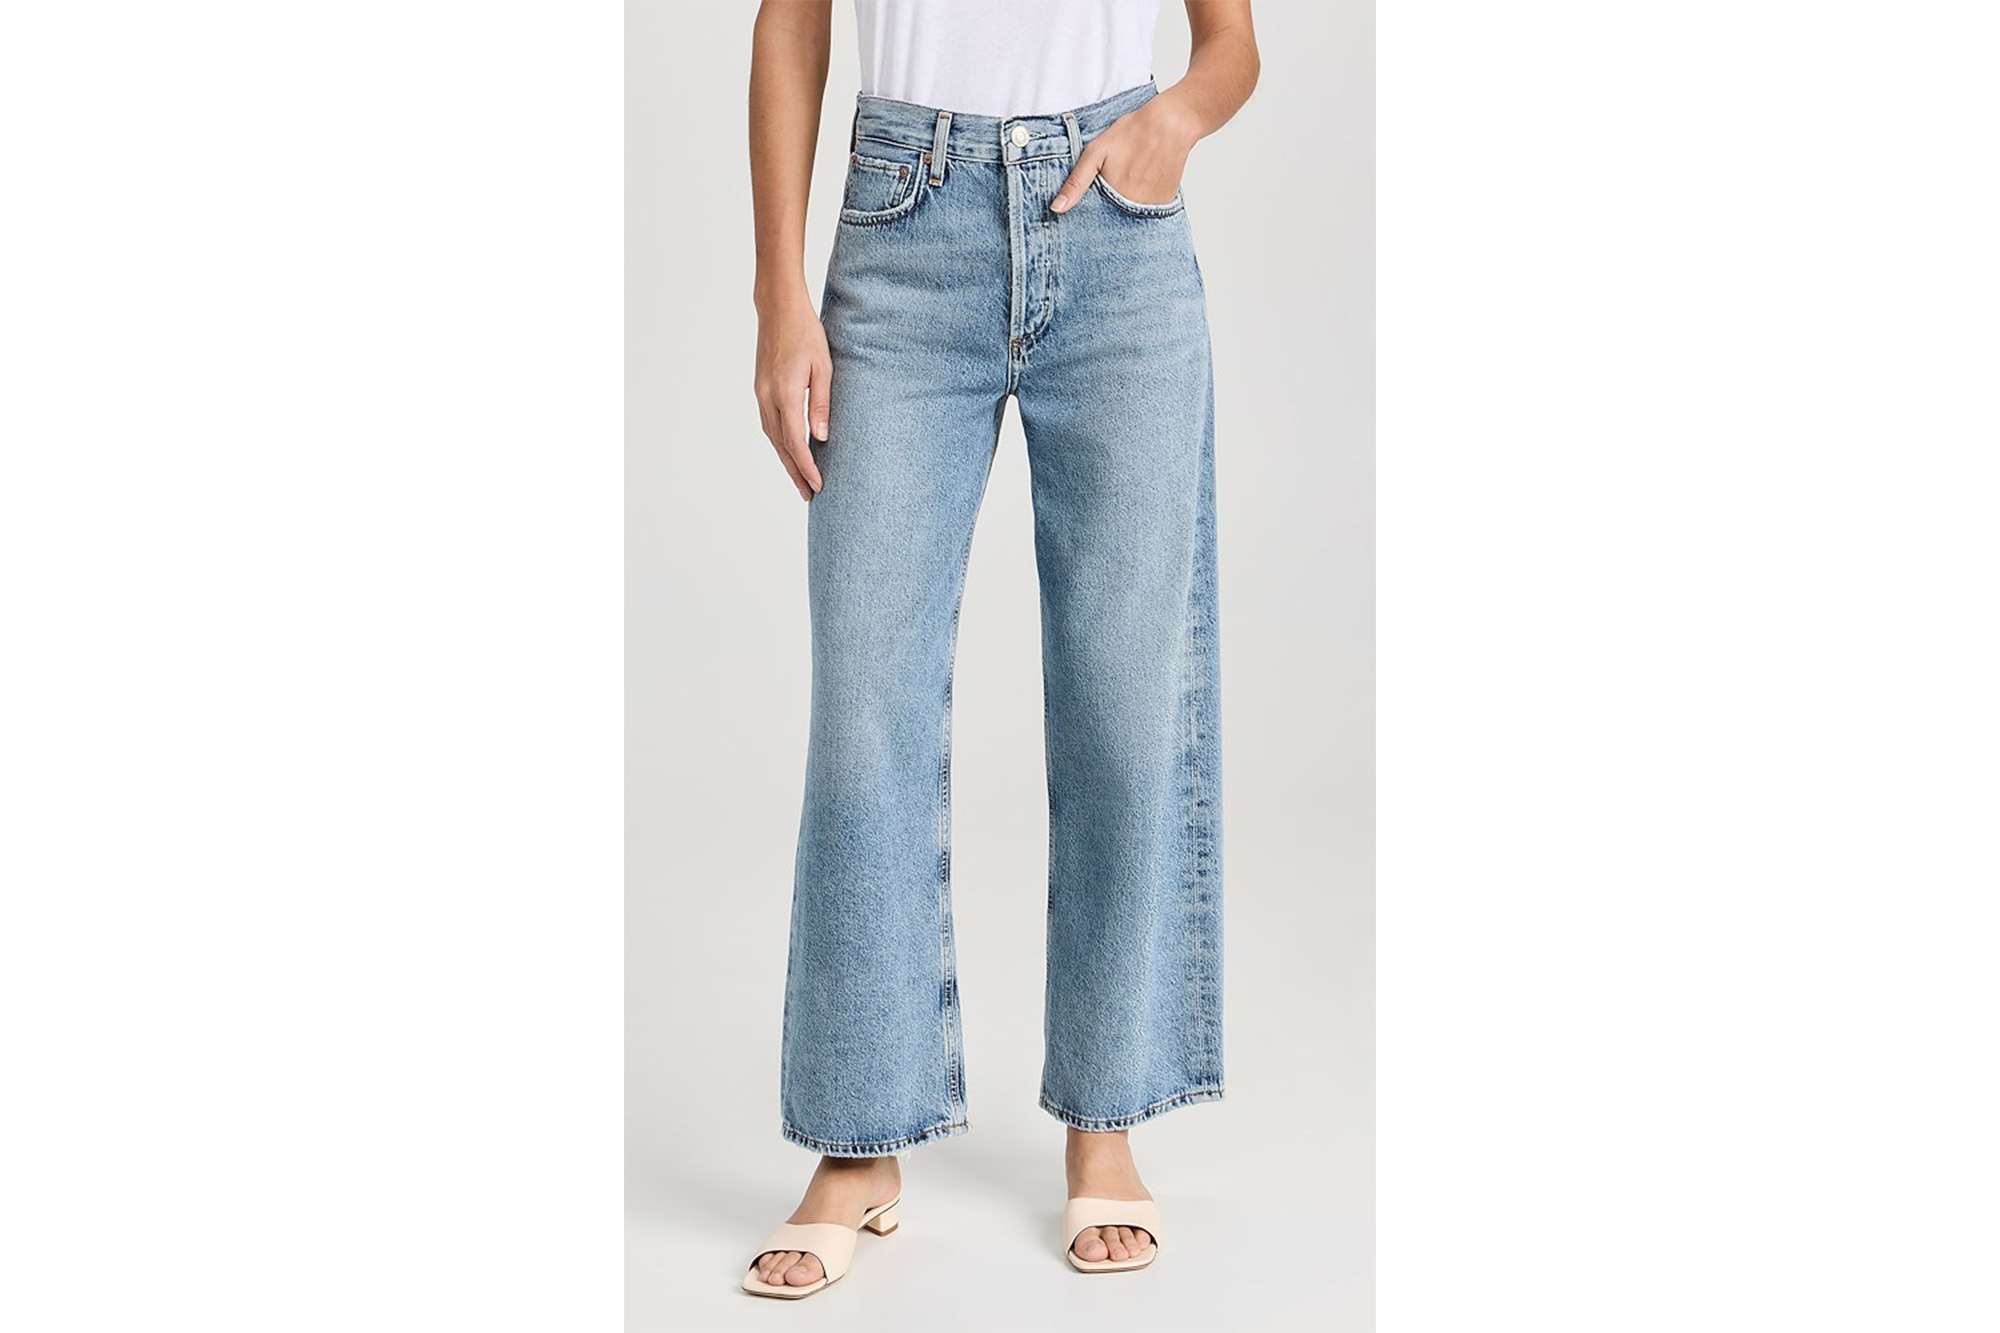 Ein Model in Jeans